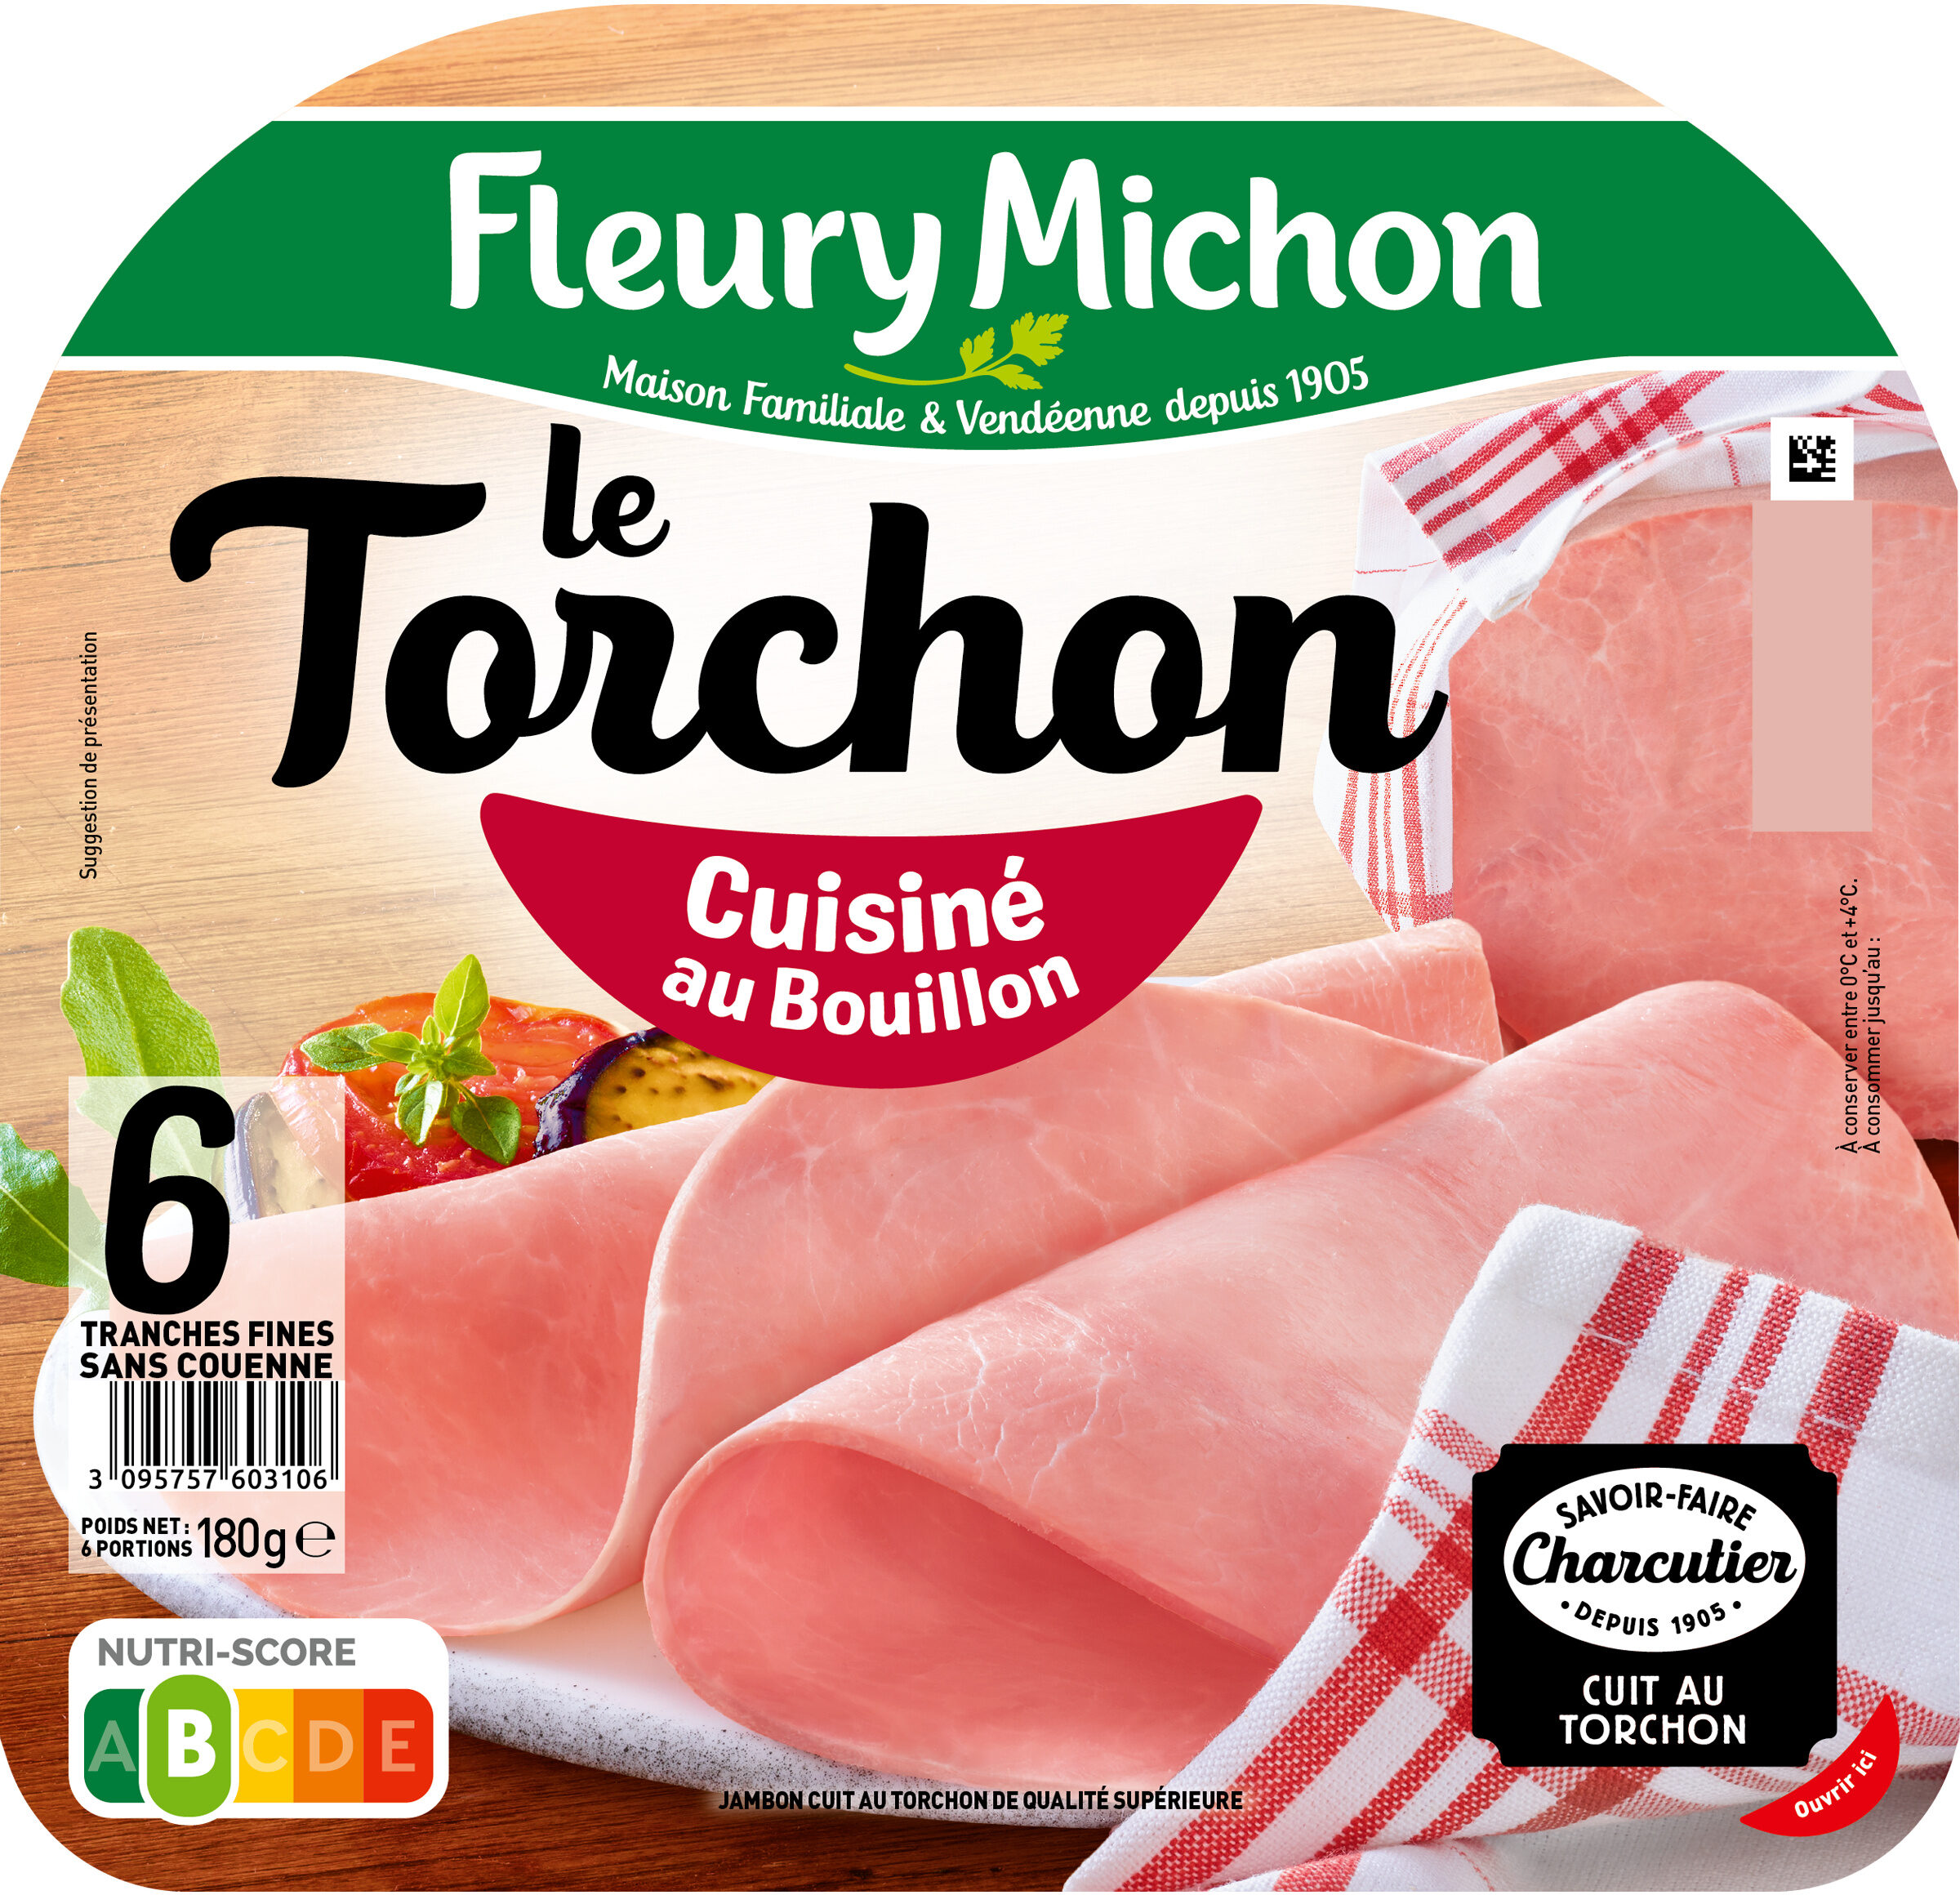 Le Torchon - Cuisiné au Bouillon - Produit - fr